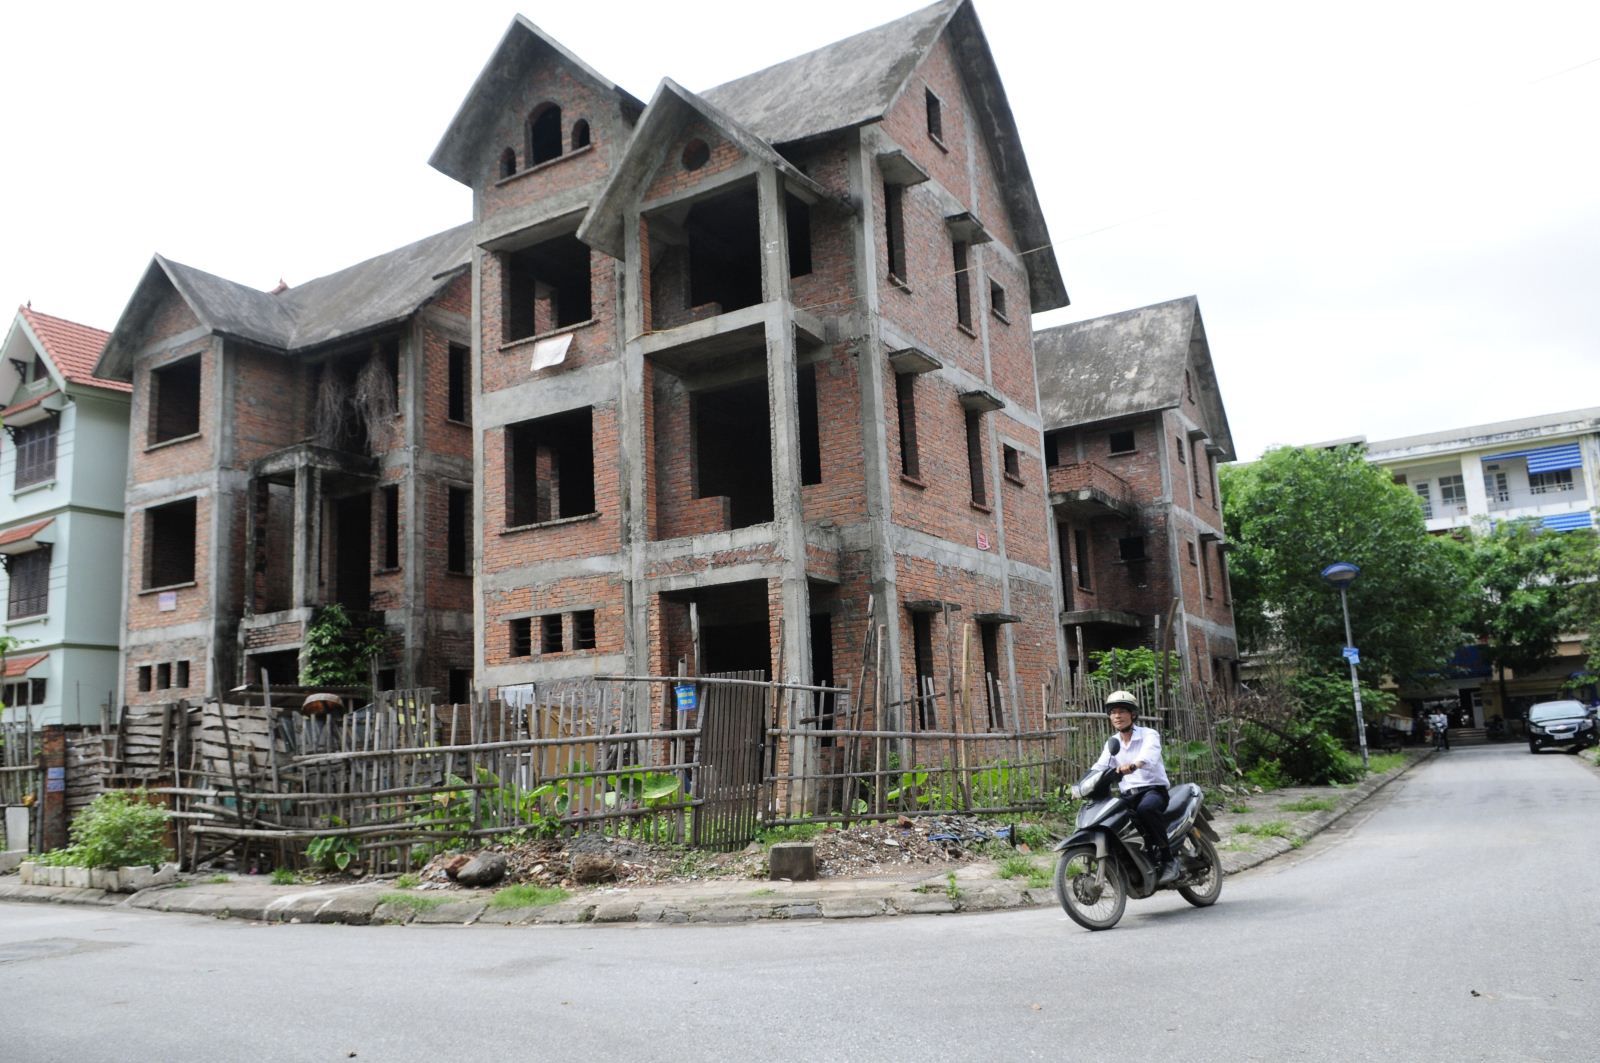 
Biệt thự xây thô tại phía tây Hà Nội đang nóng trở lại
